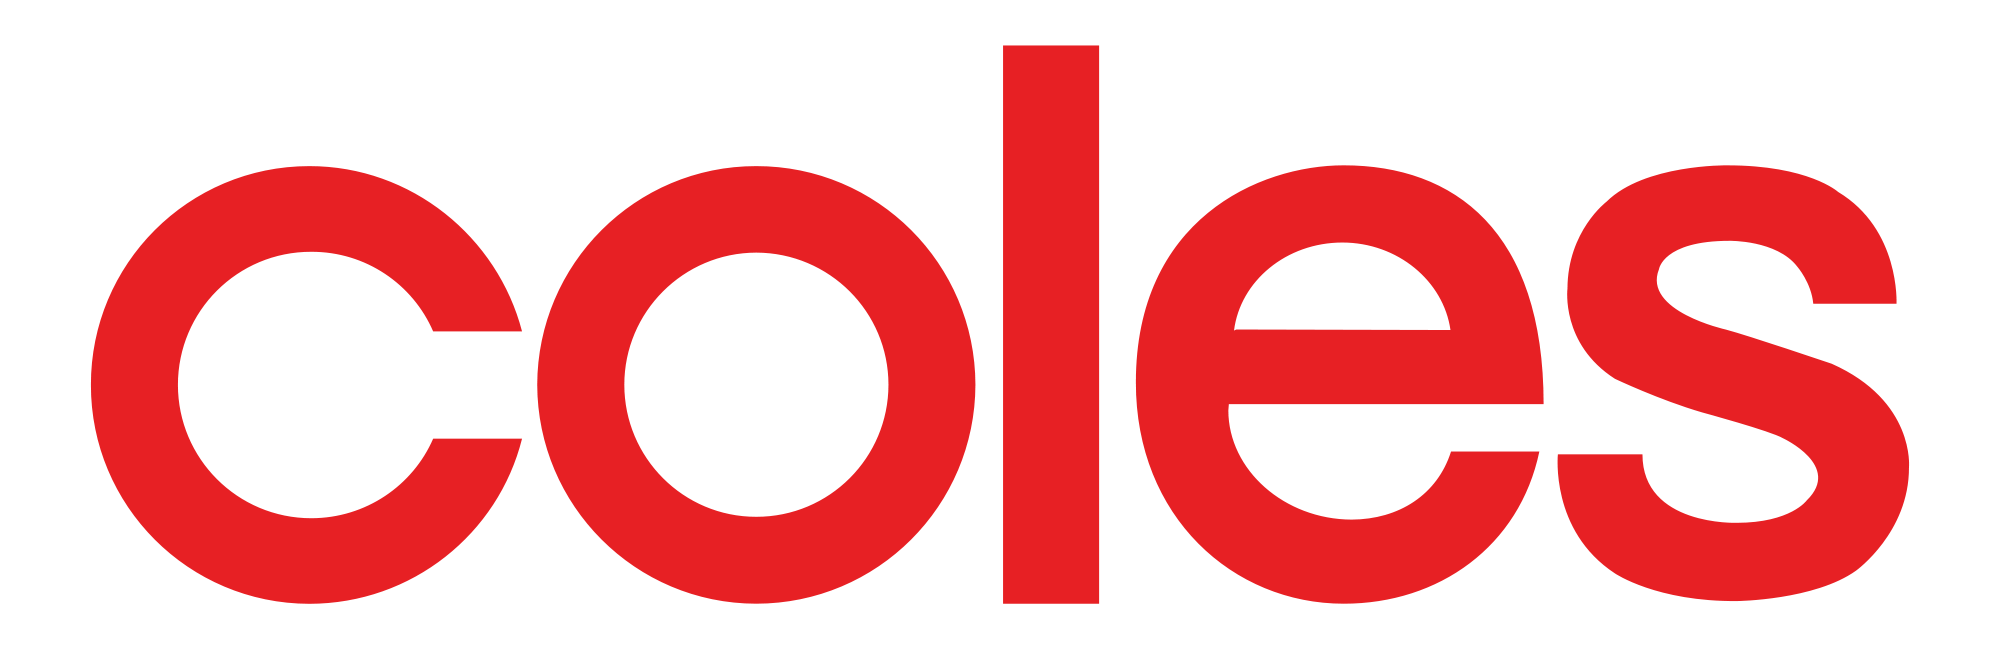 Coles Logo Wallpaper